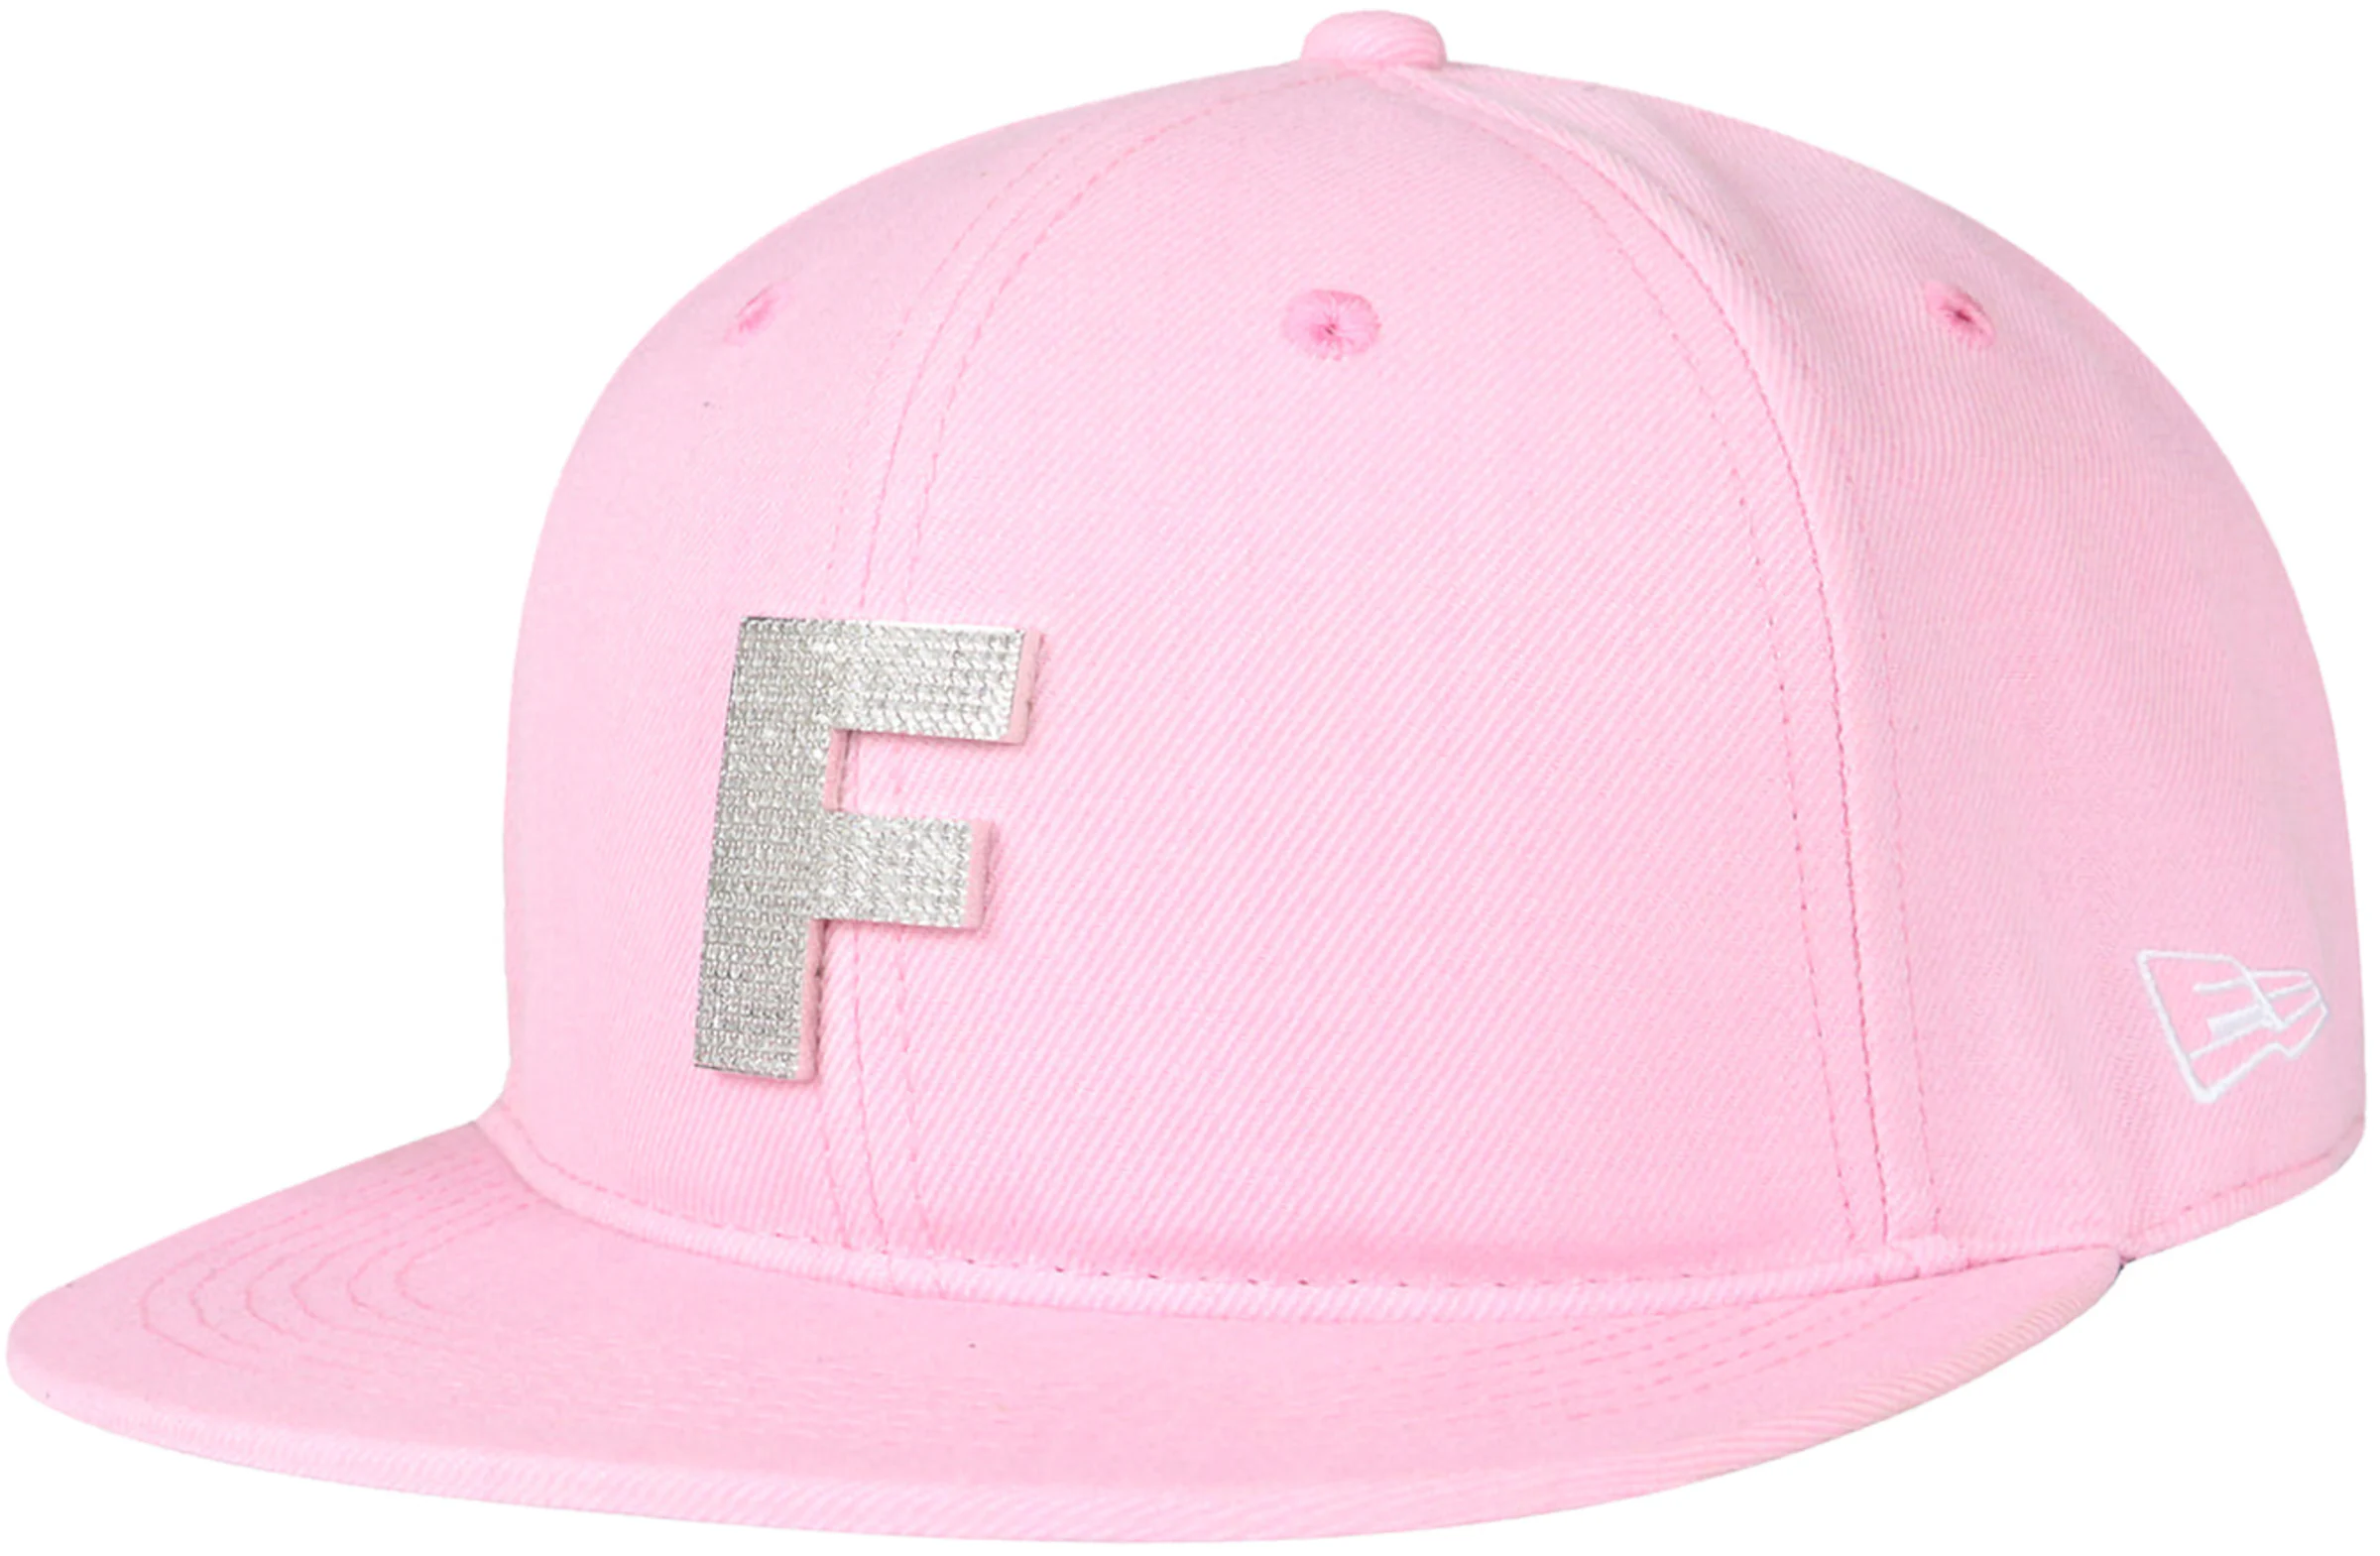 A.M. Fishing Snapback Grey/Hot Pink - Hot Pink Logo